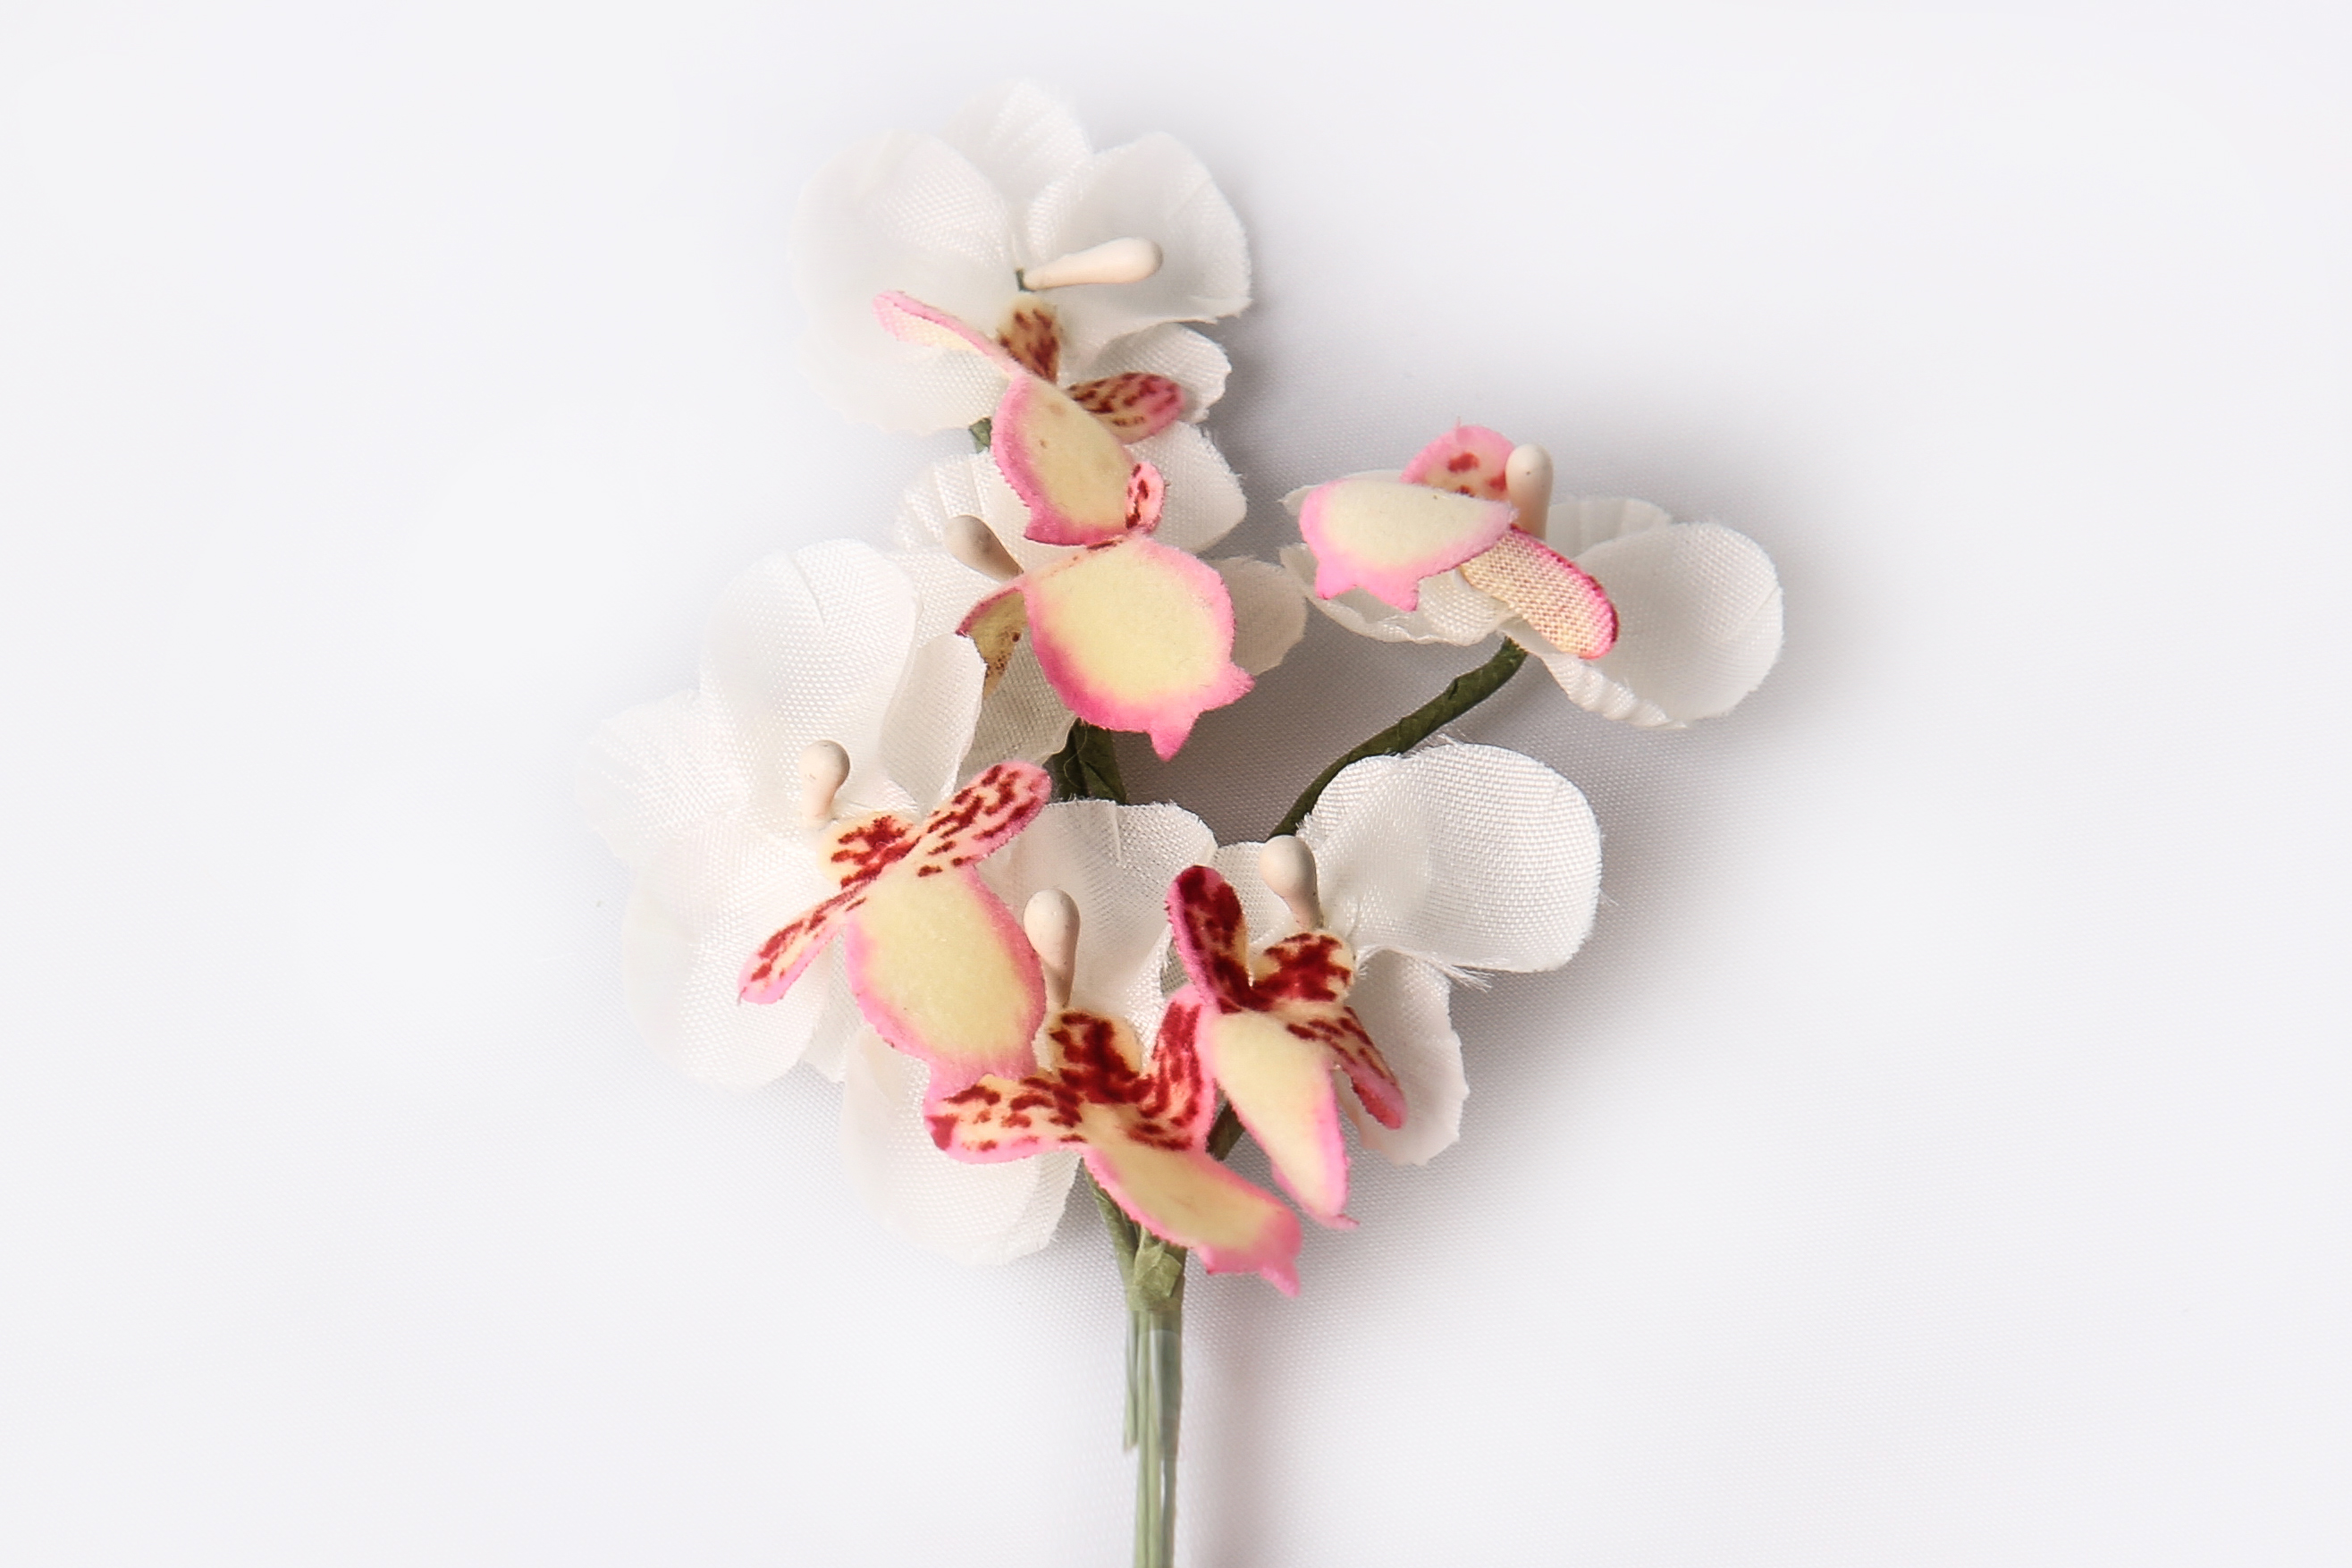 Miniorchidee, Blüte 2,5 cm am Stiel, 6 STk./Bund, weiss